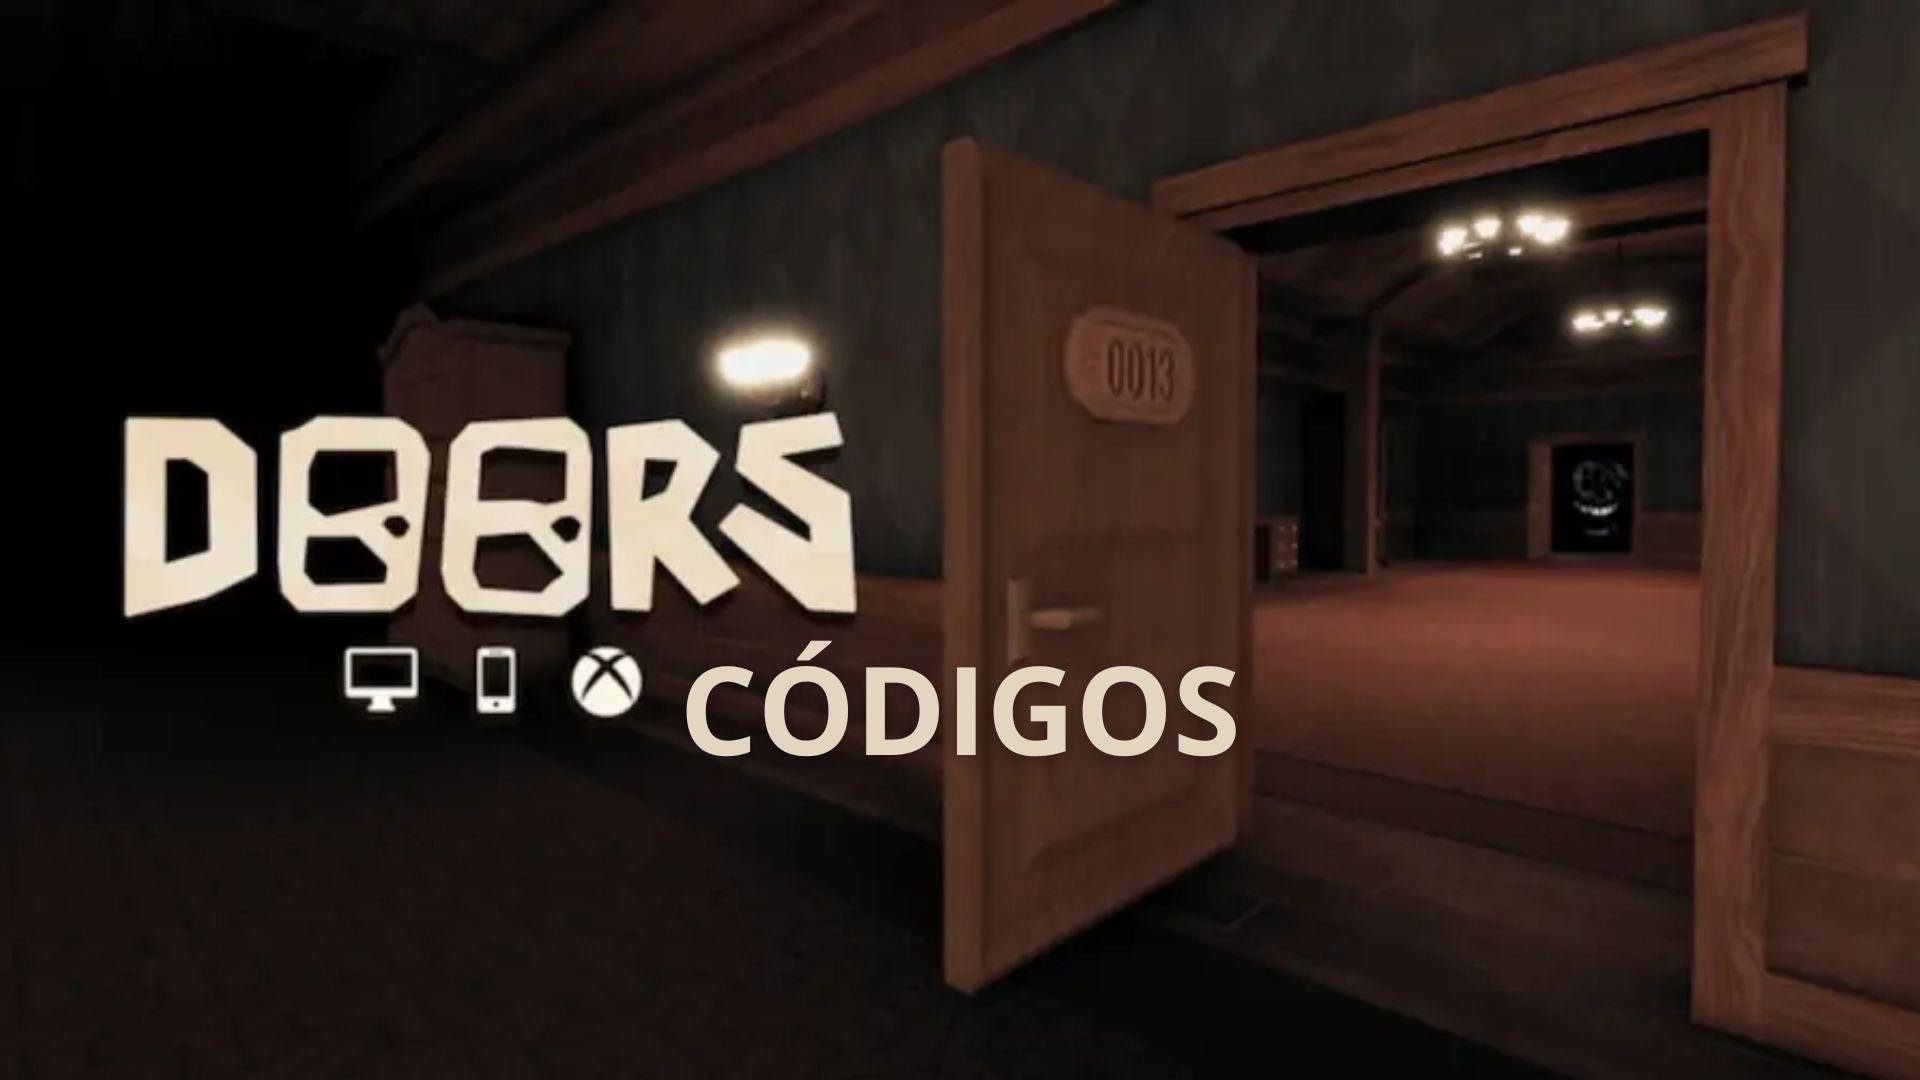 CODIGOS DOORS